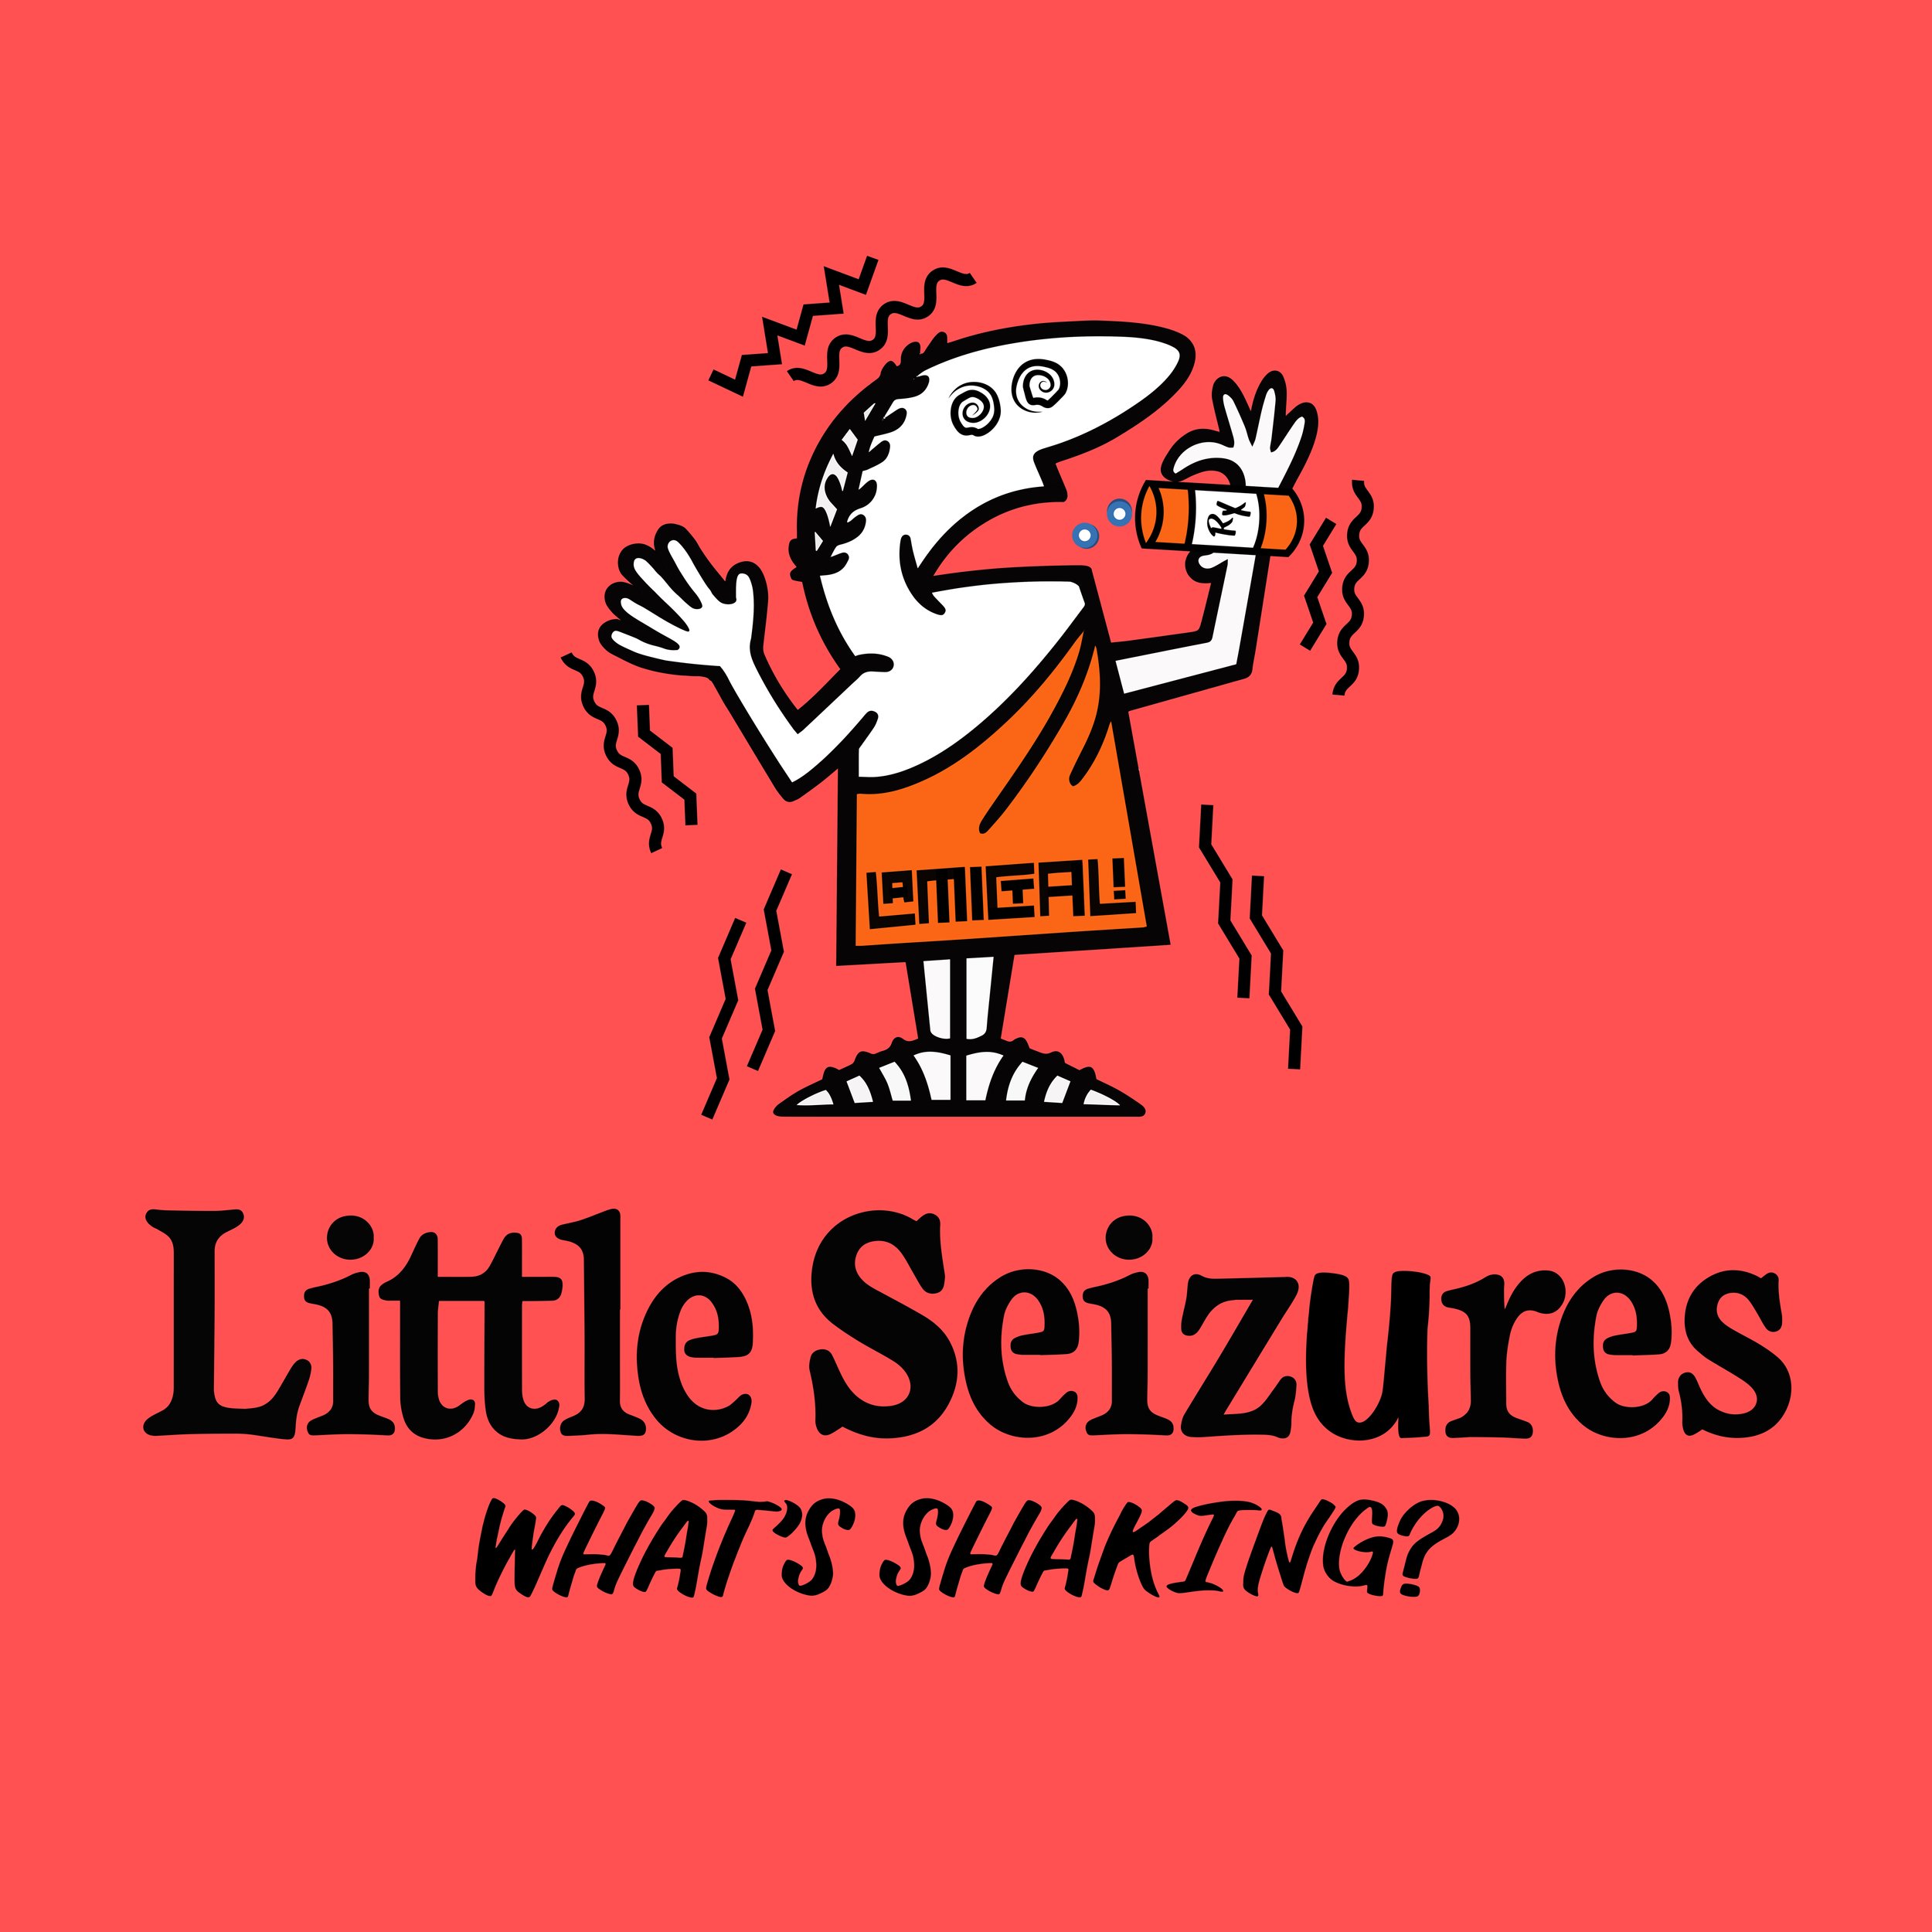 Little-seizures-Logo-red.jpg